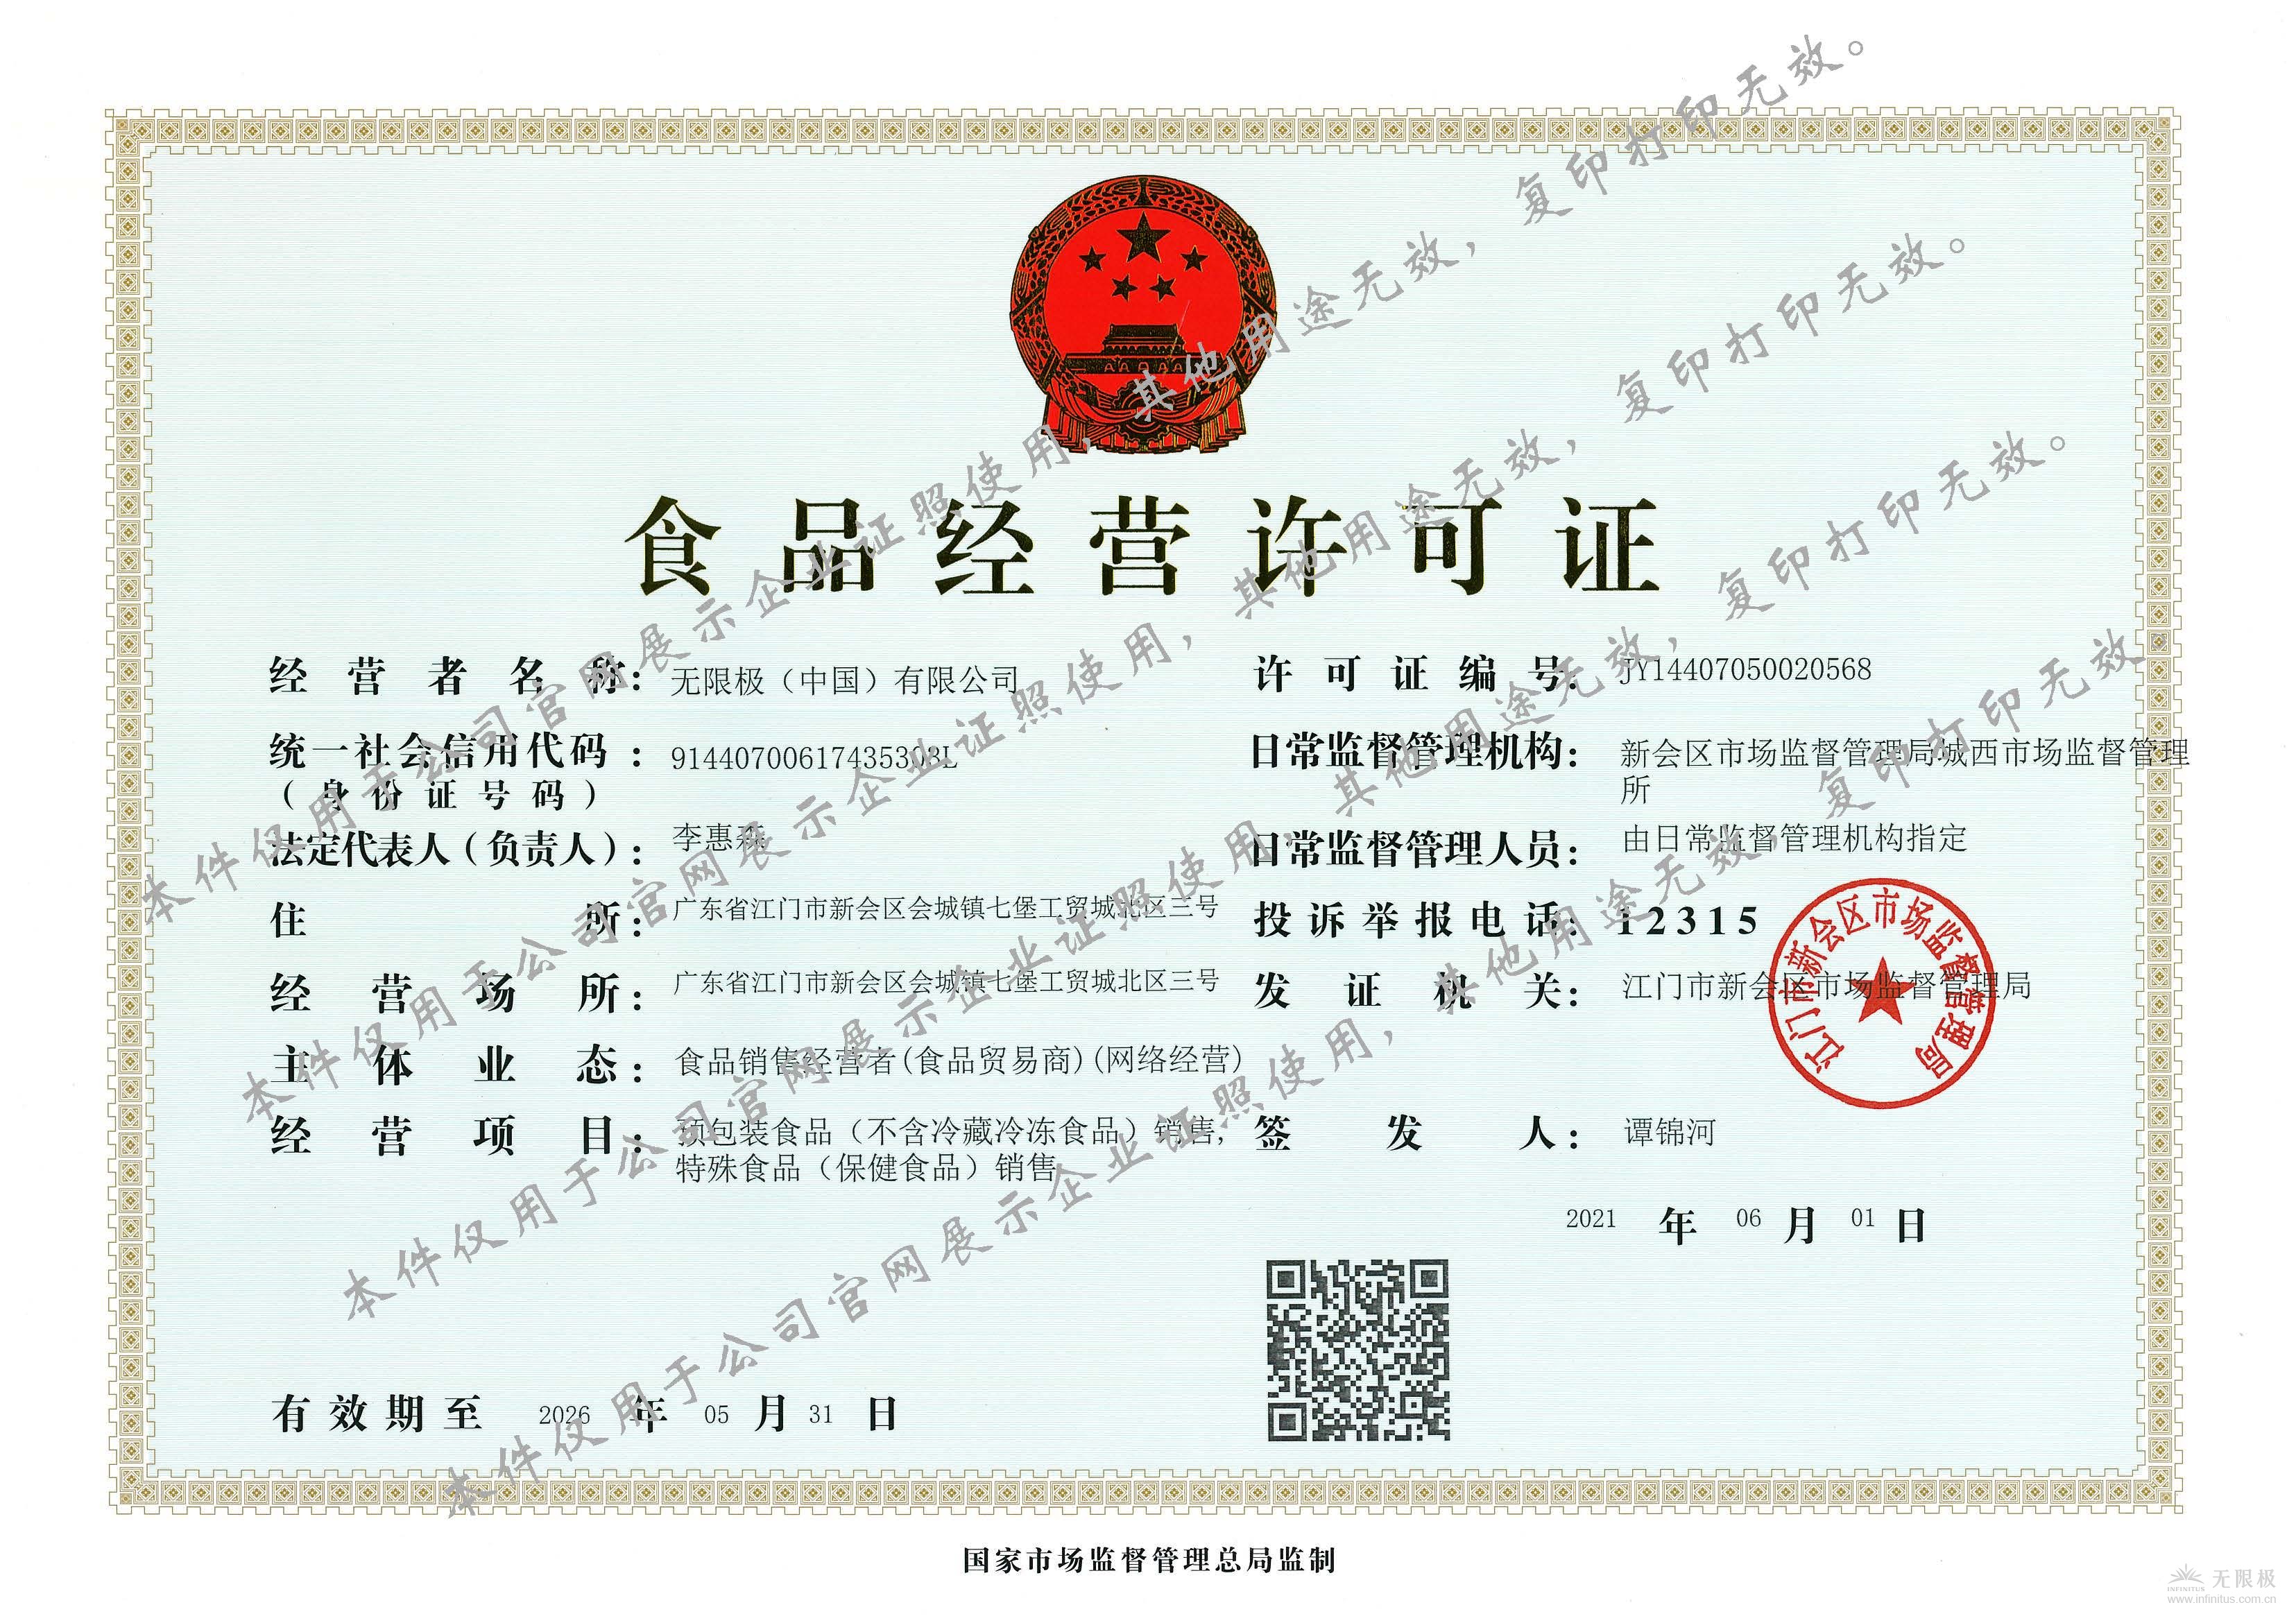 無限極（中国）有限公司食品經營許可證正本